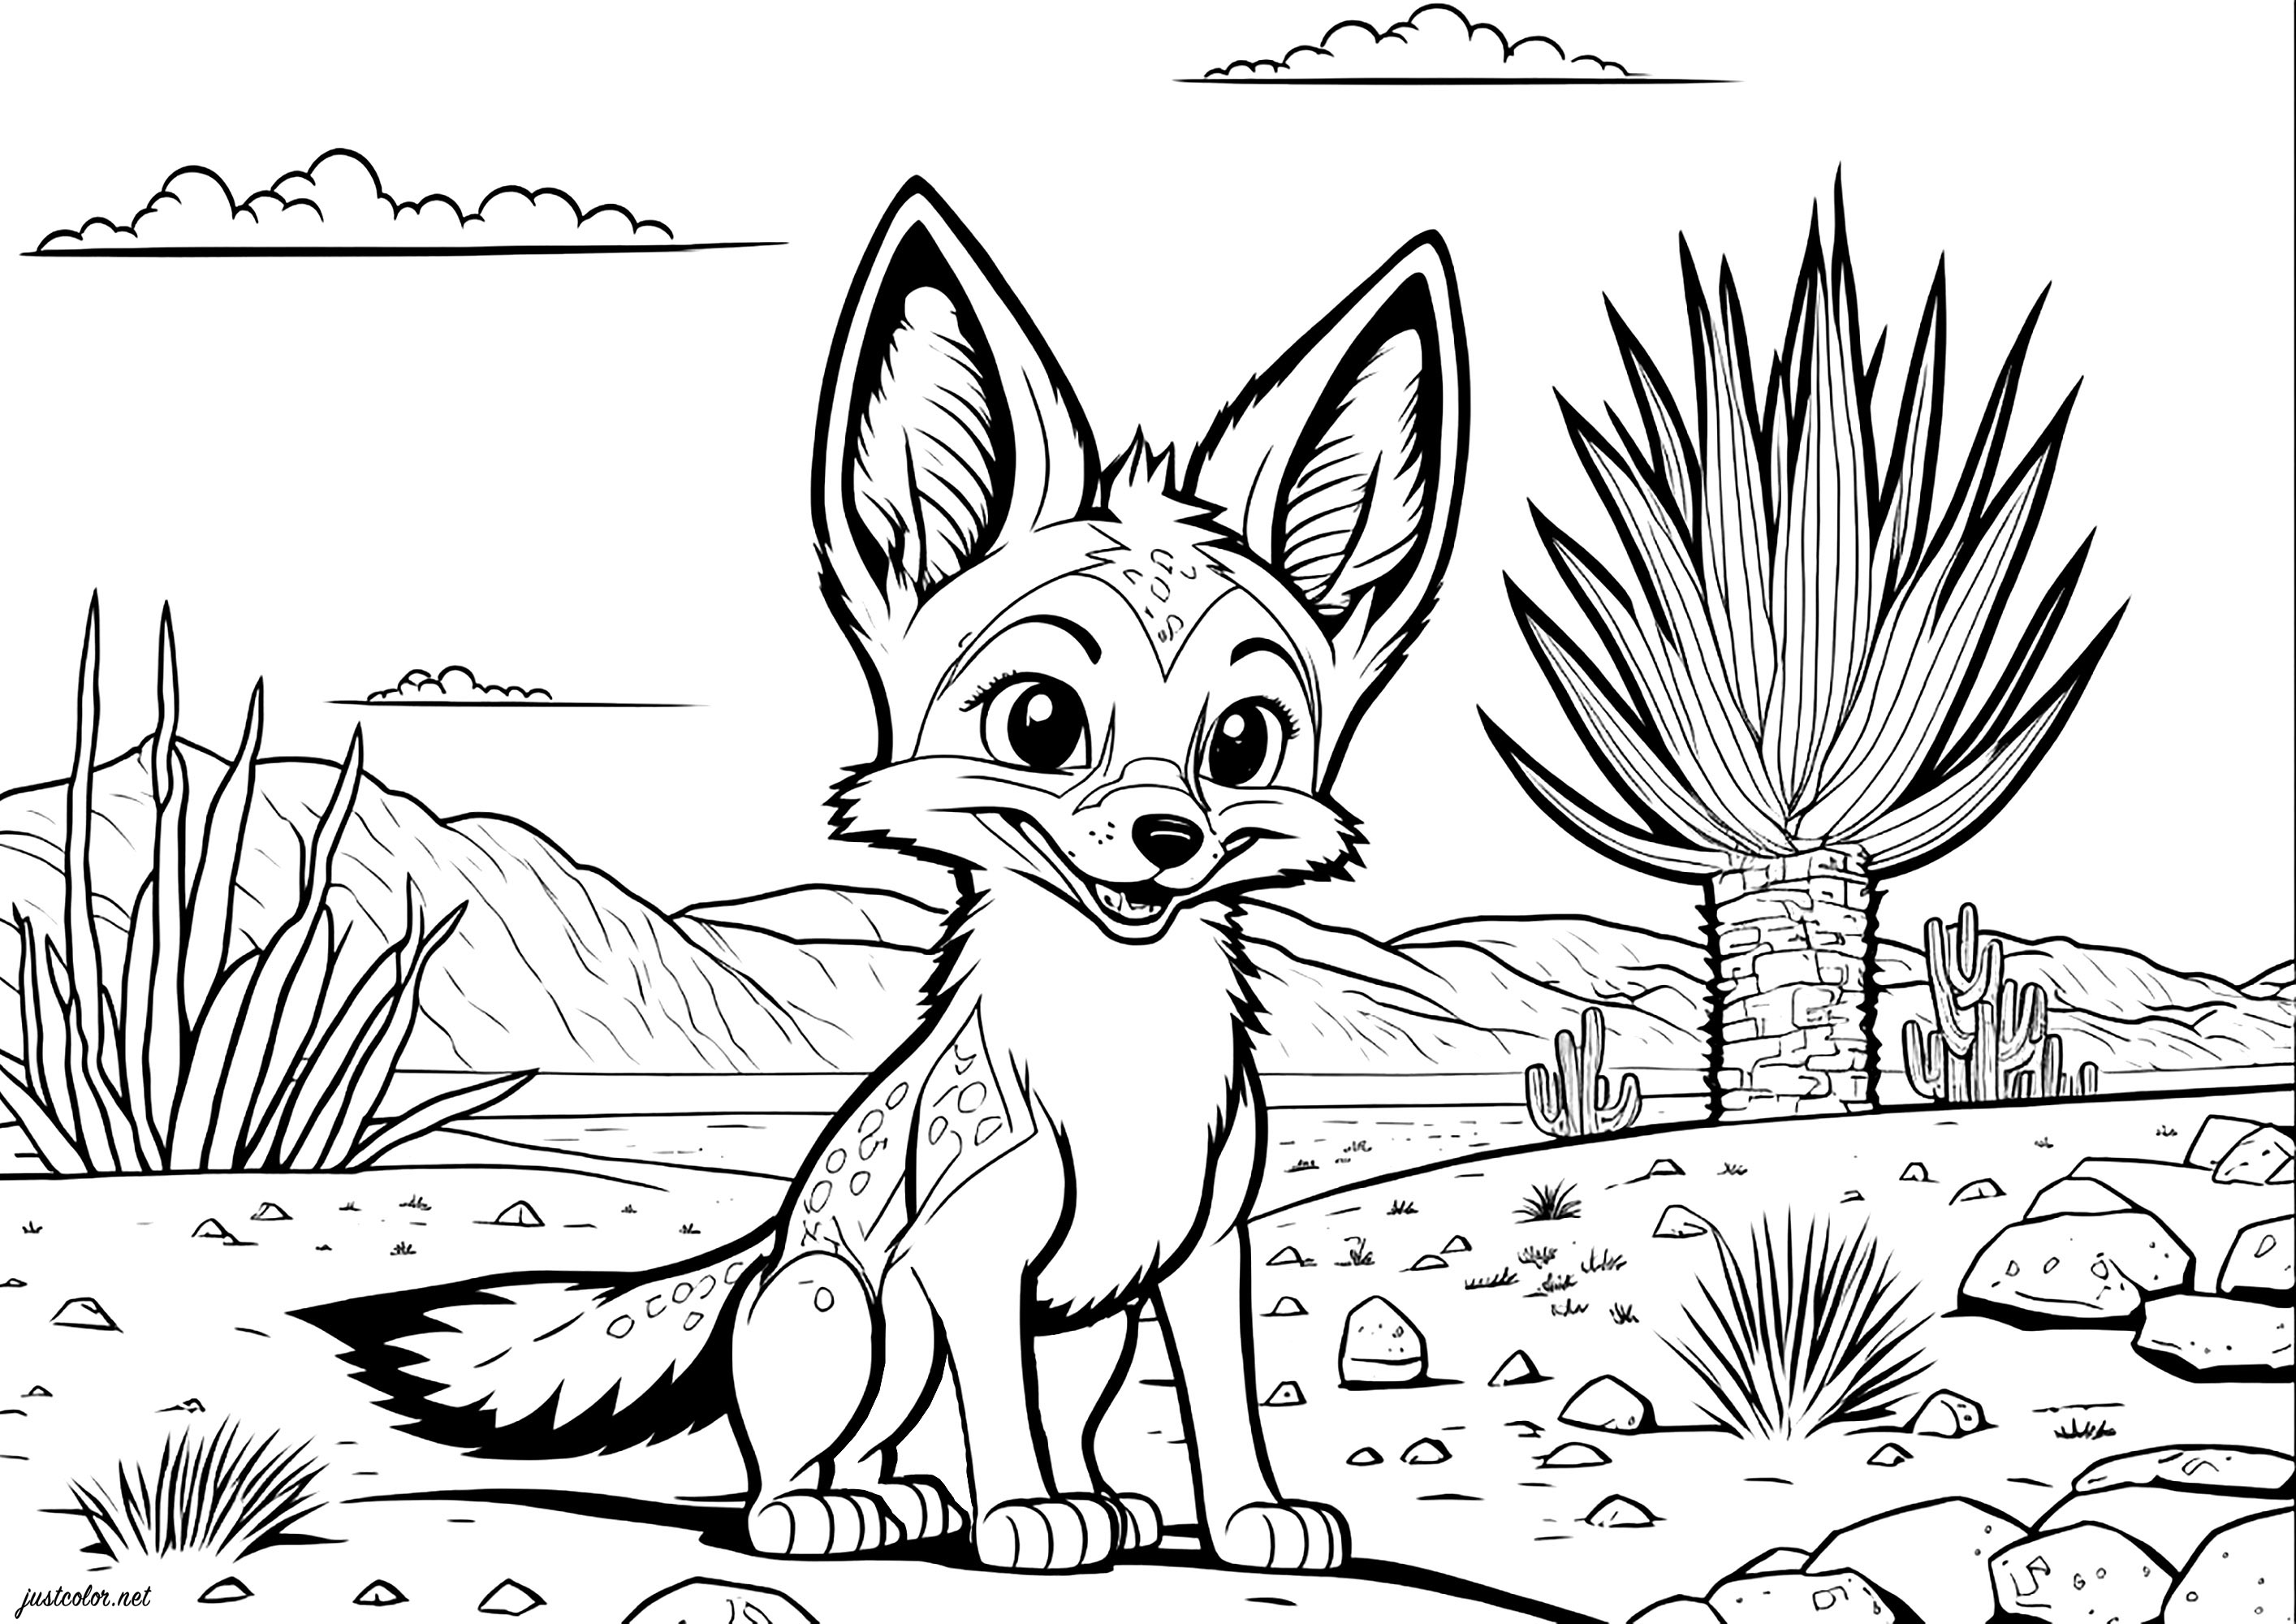 Ausmalen eines niedlichen Fuchses in der Wüste. Lass dich vom Mut dieses jungen Fuchses inspirieren, neue Horizonte zu erkunden und deinen eigenen Weg in der Wüste des Lebens zu finden!